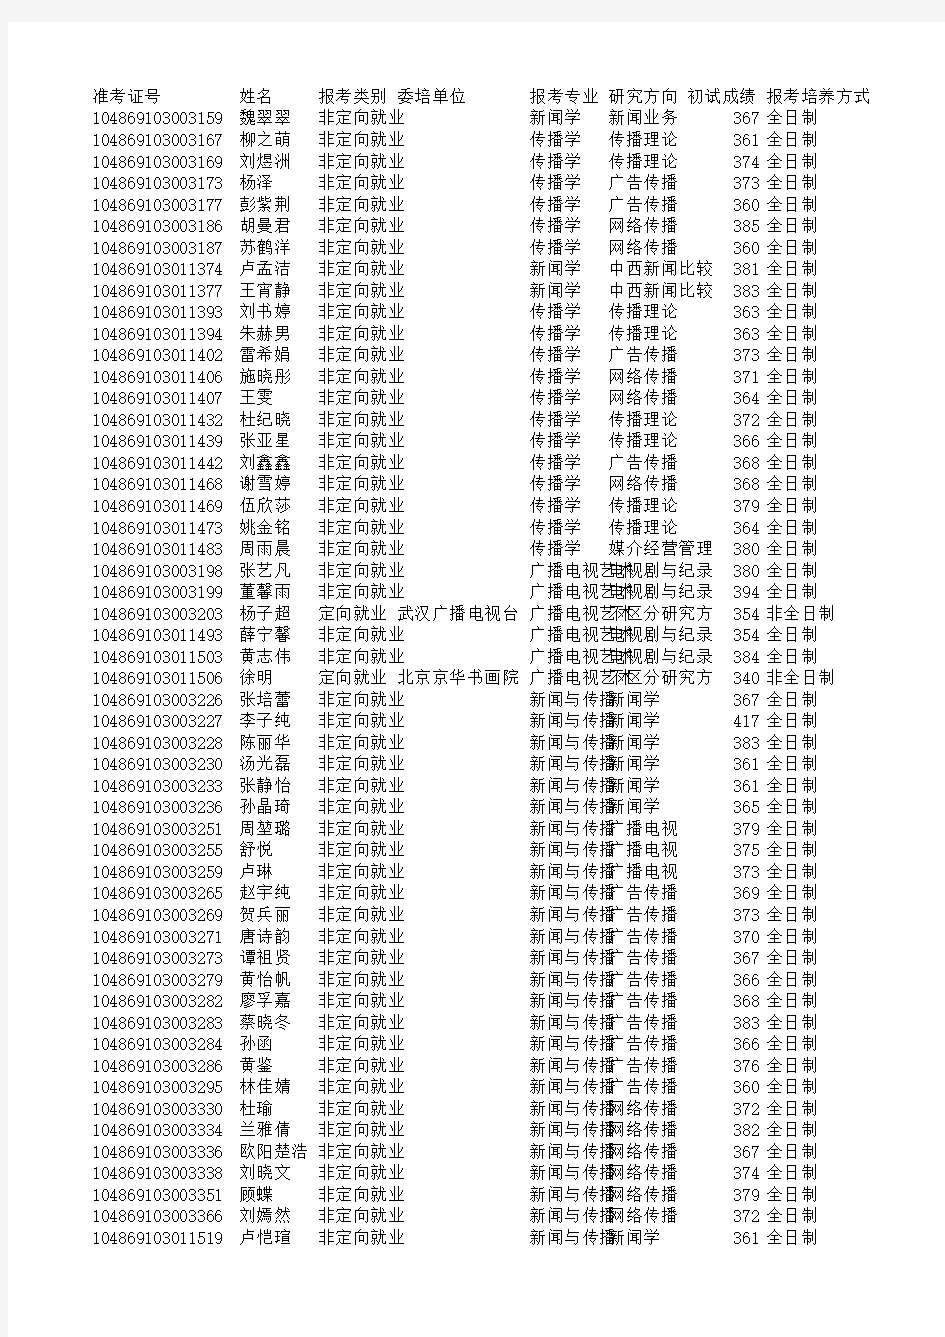 武汉大学新闻传播录取名单